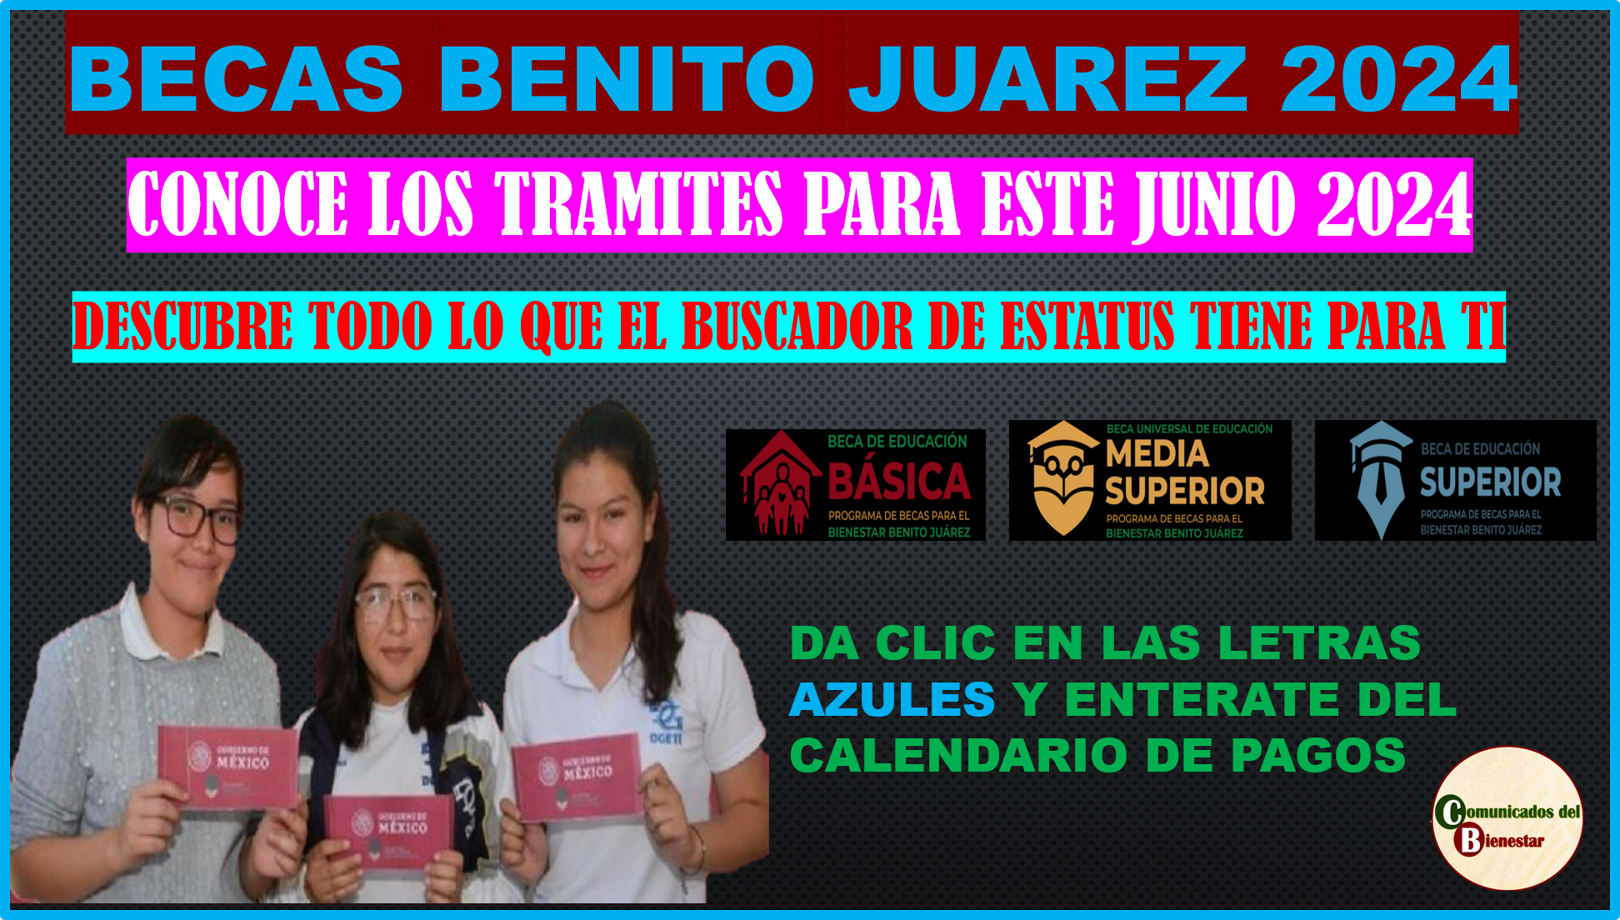 ATENCION JOVENES ESTUDIANTES ENTERATE DE TODOS LOS TRAMITES DISPONIBLES EN EL BUSCADOR DE ESTATUS PARA JUNIO 2024